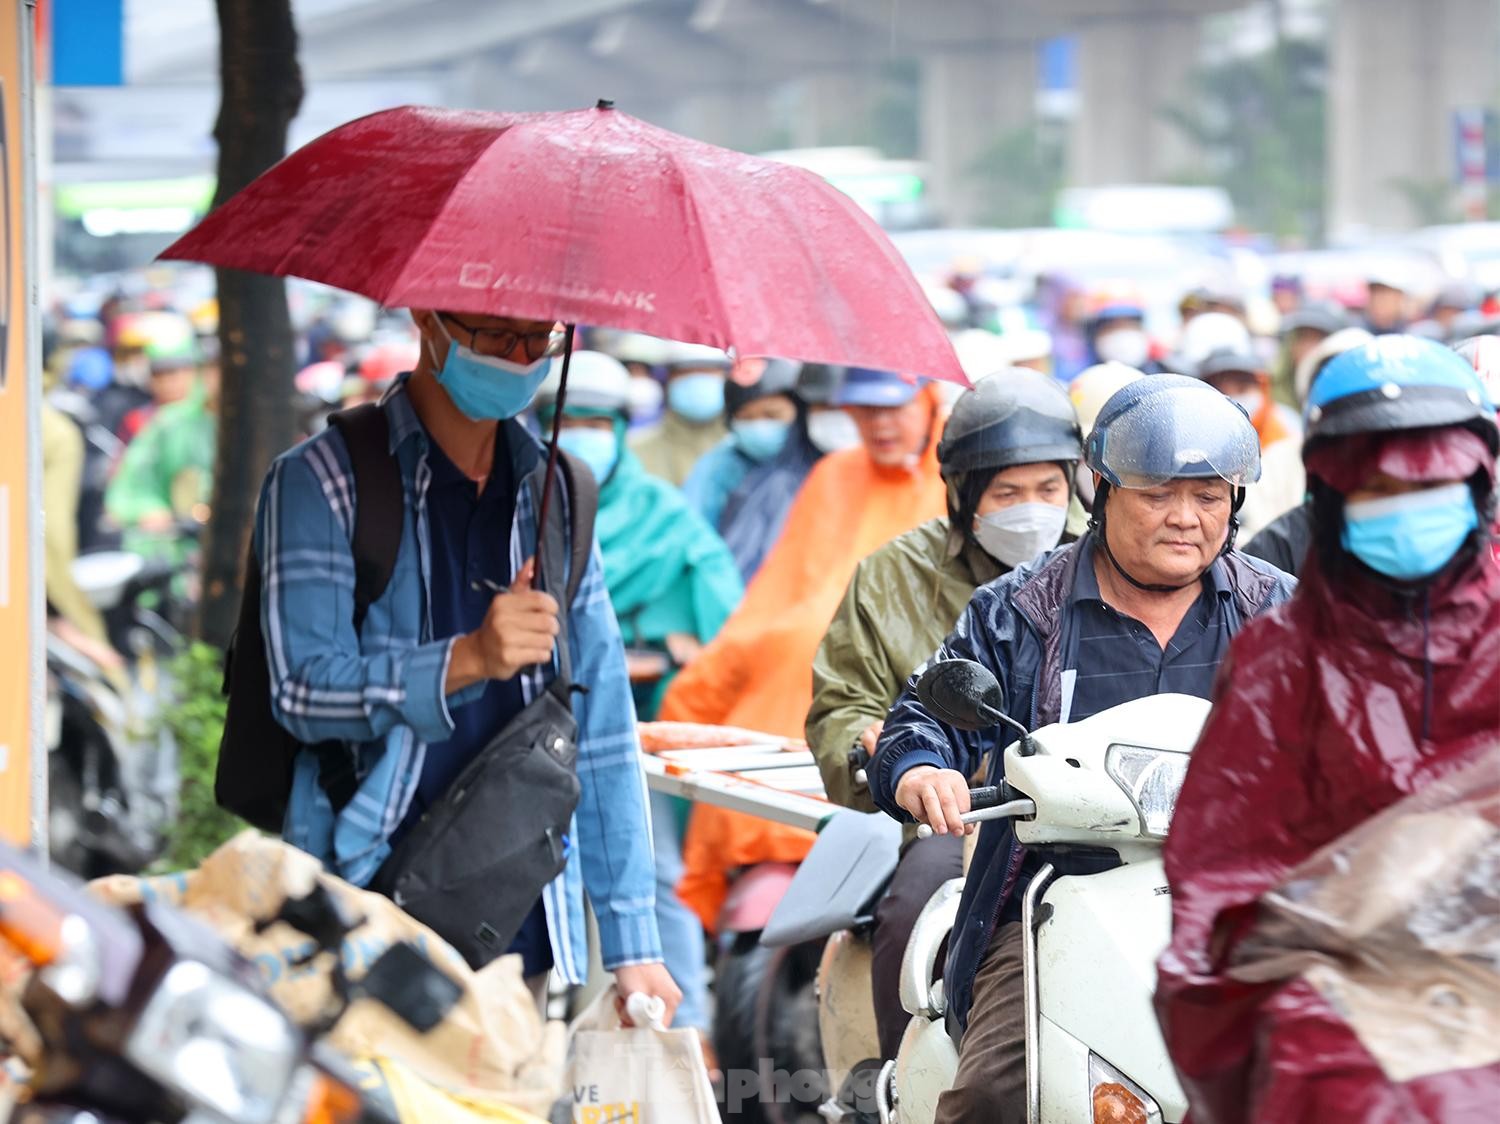 Gió mùa tràn về Hà Nội, biển người nhích từng bước giữa cơn mưa lúc sáng sớm - Ảnh 5.